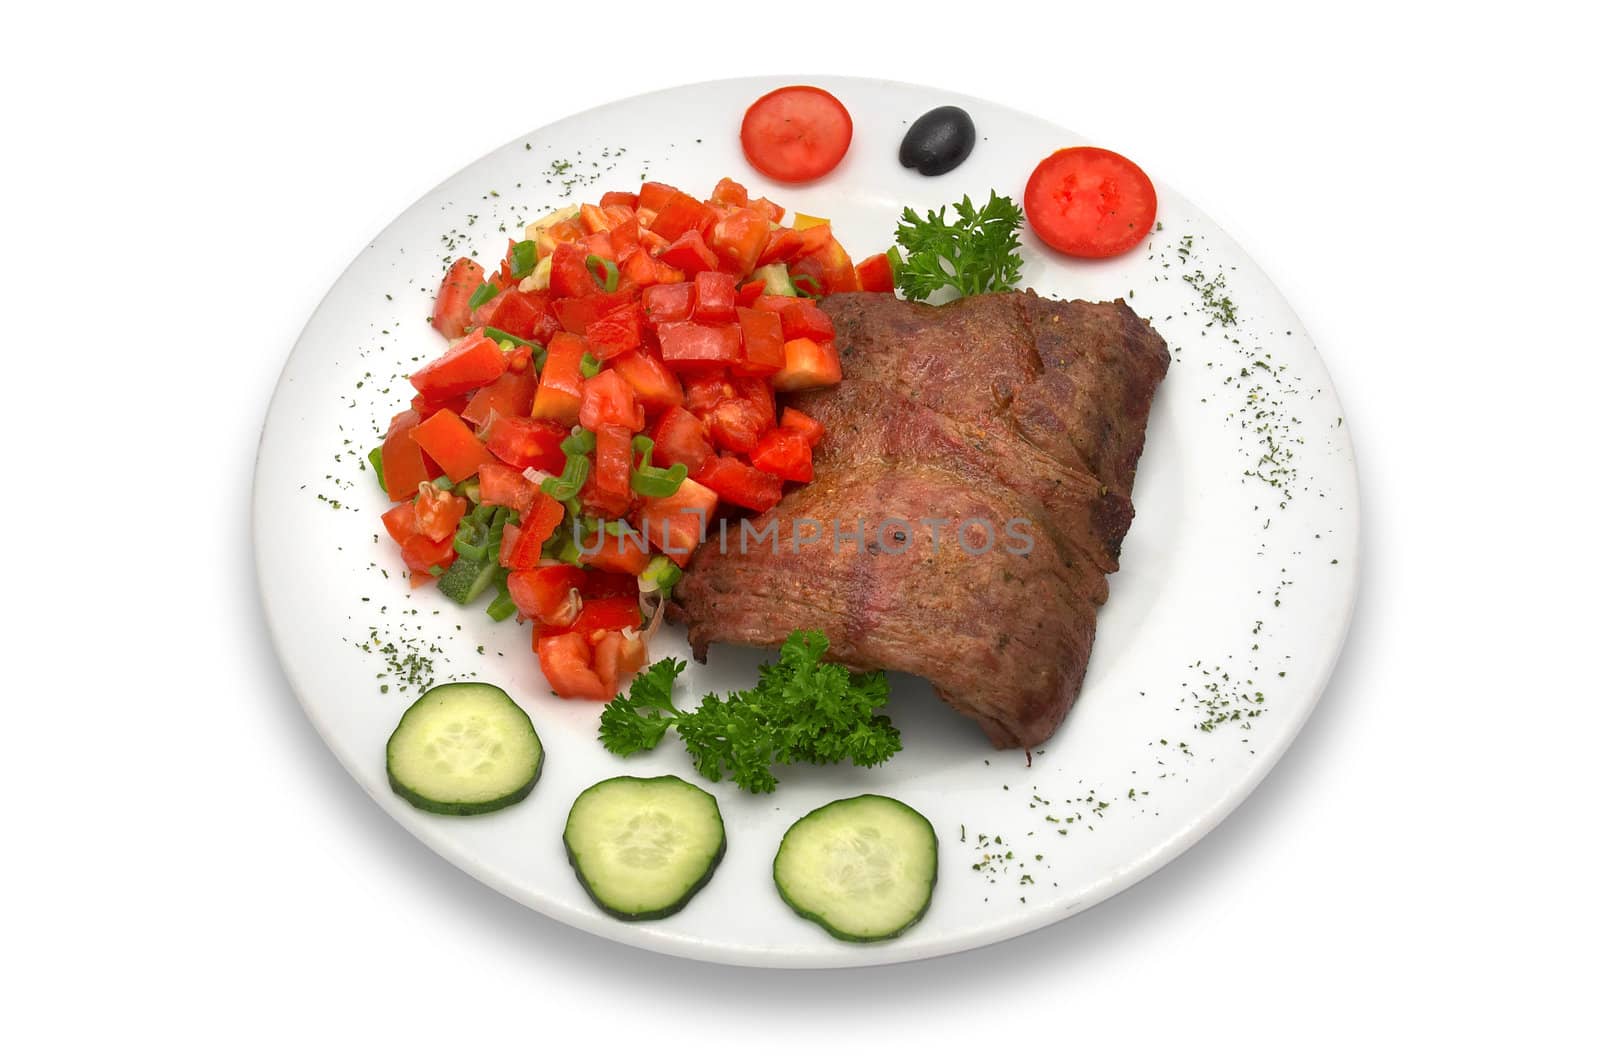 Grilled veal fillet with vegetable salad.